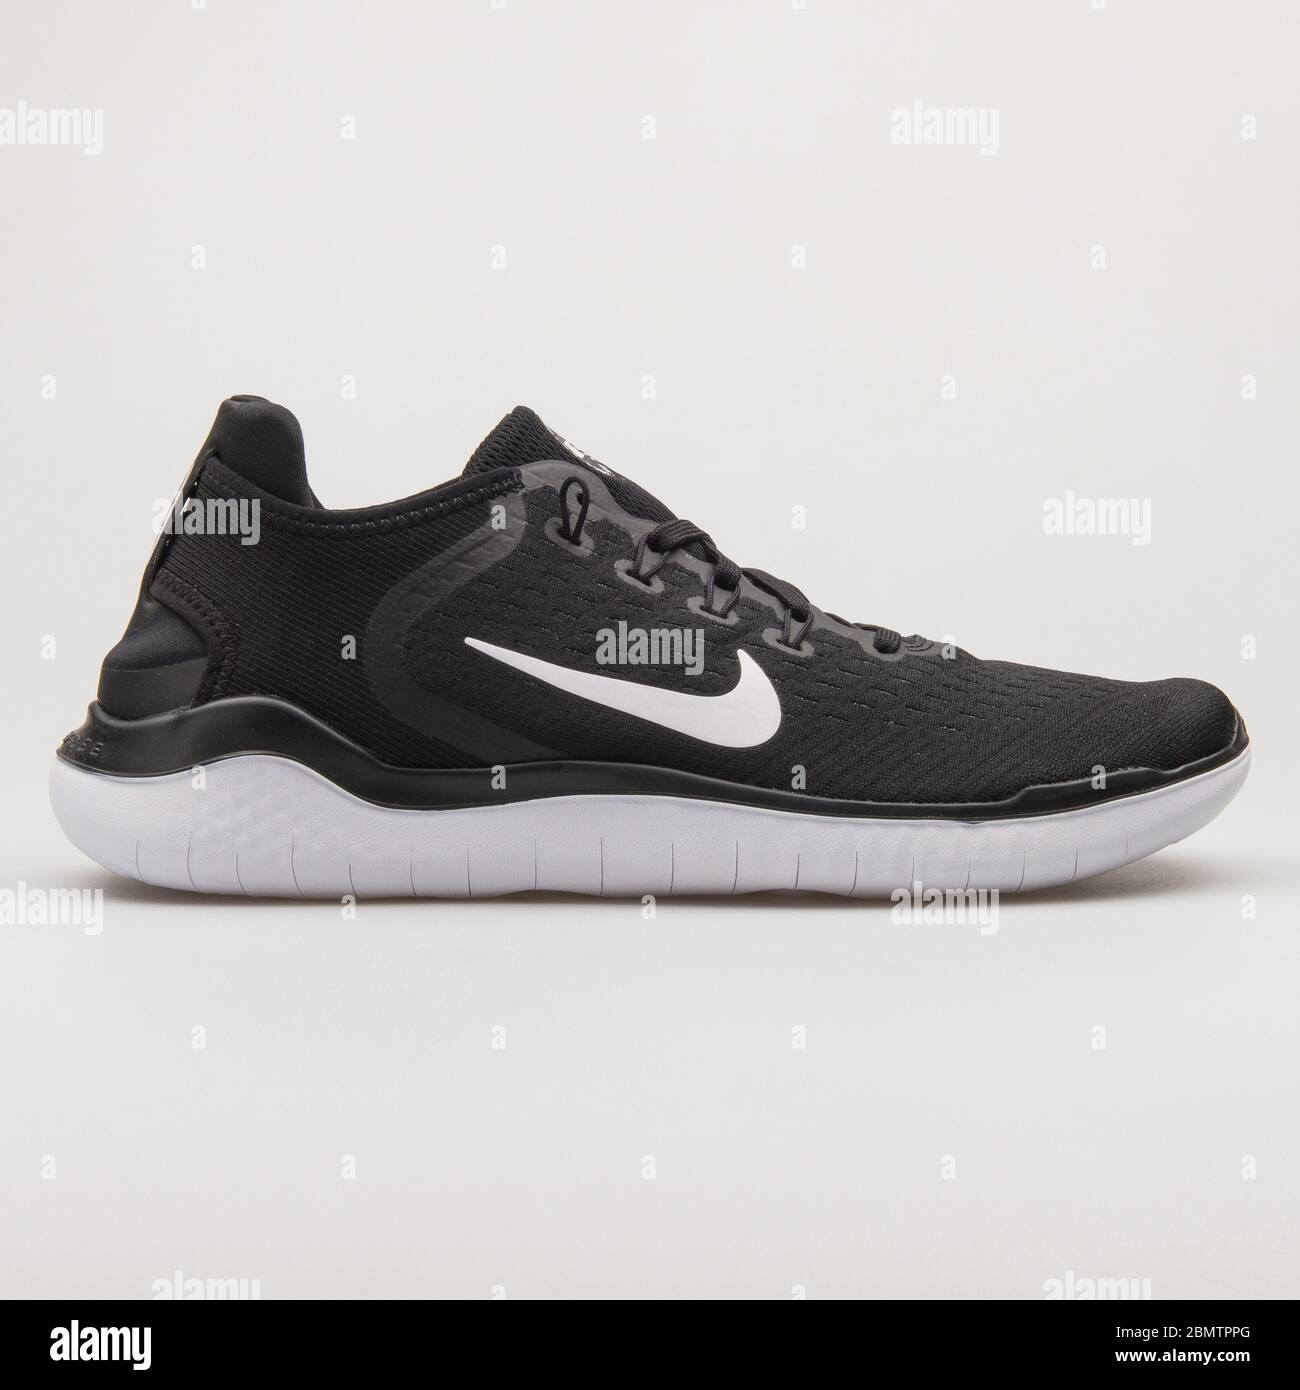 VIENNE, AUTRICHE - 19 FÉVRIER 2018 : sneaker Nike Free RN 2018 noir et blanc  sur fond blanc Photo Stock - Alamy